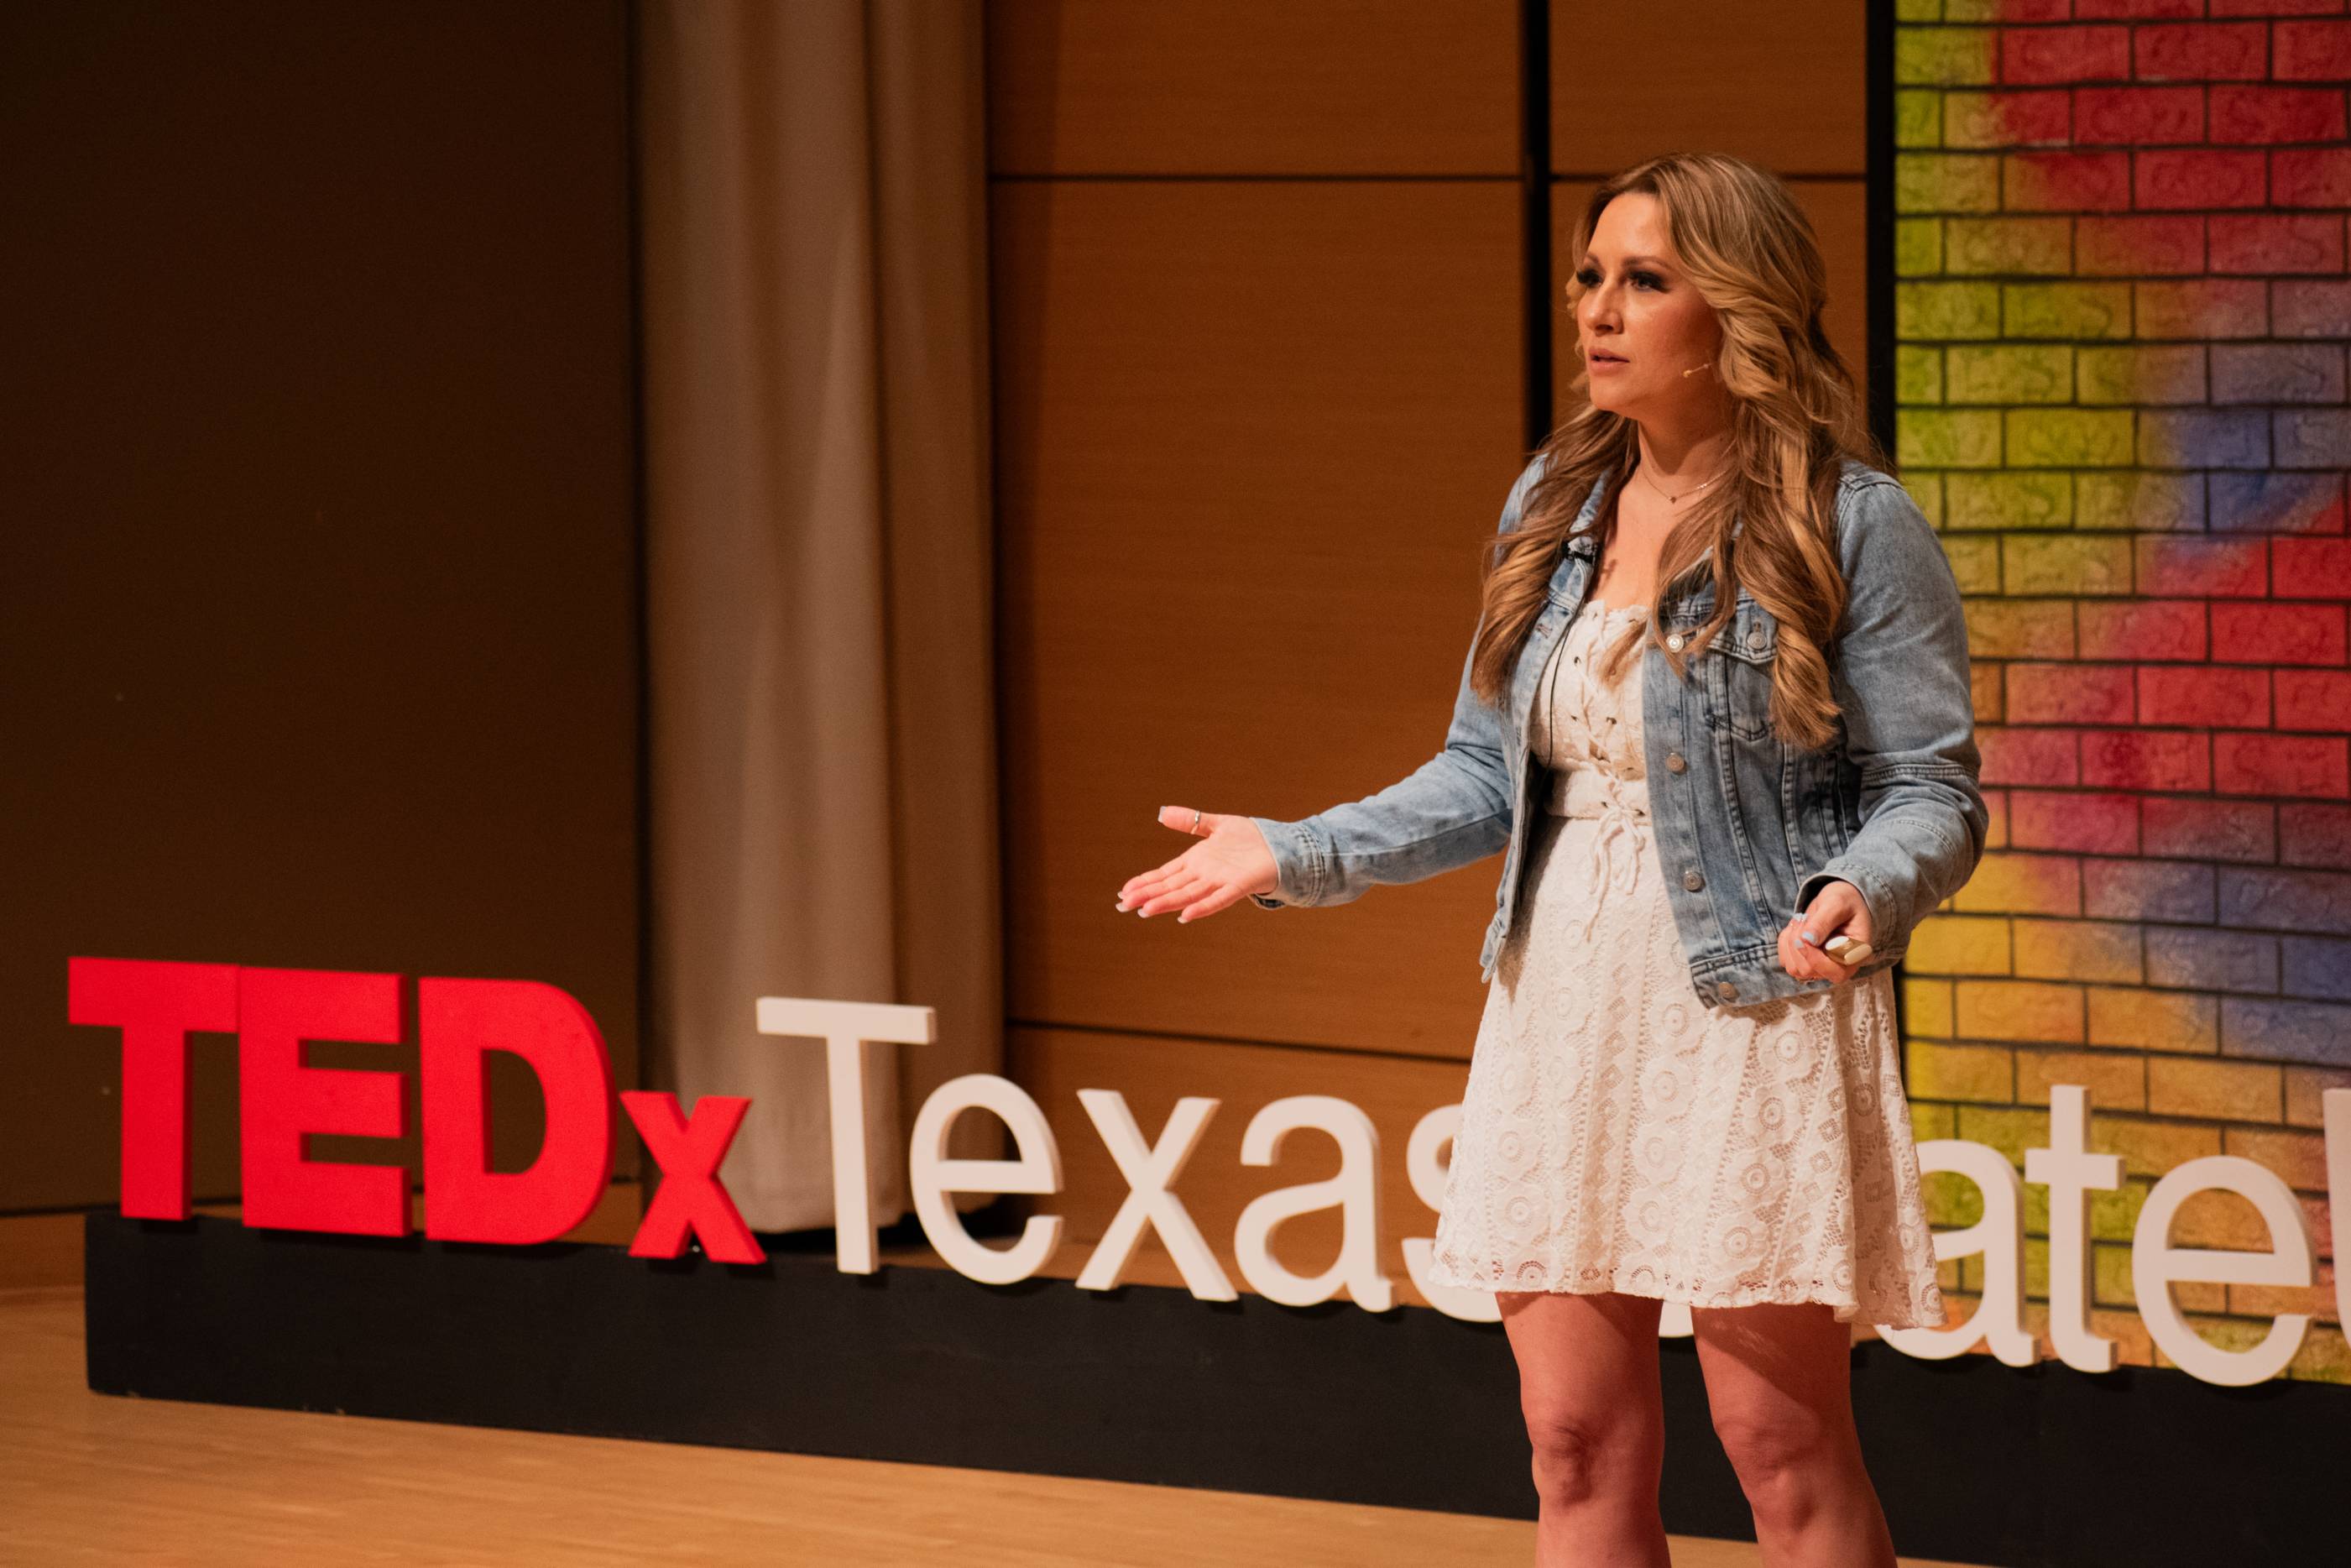 TEDx Speaker on stage